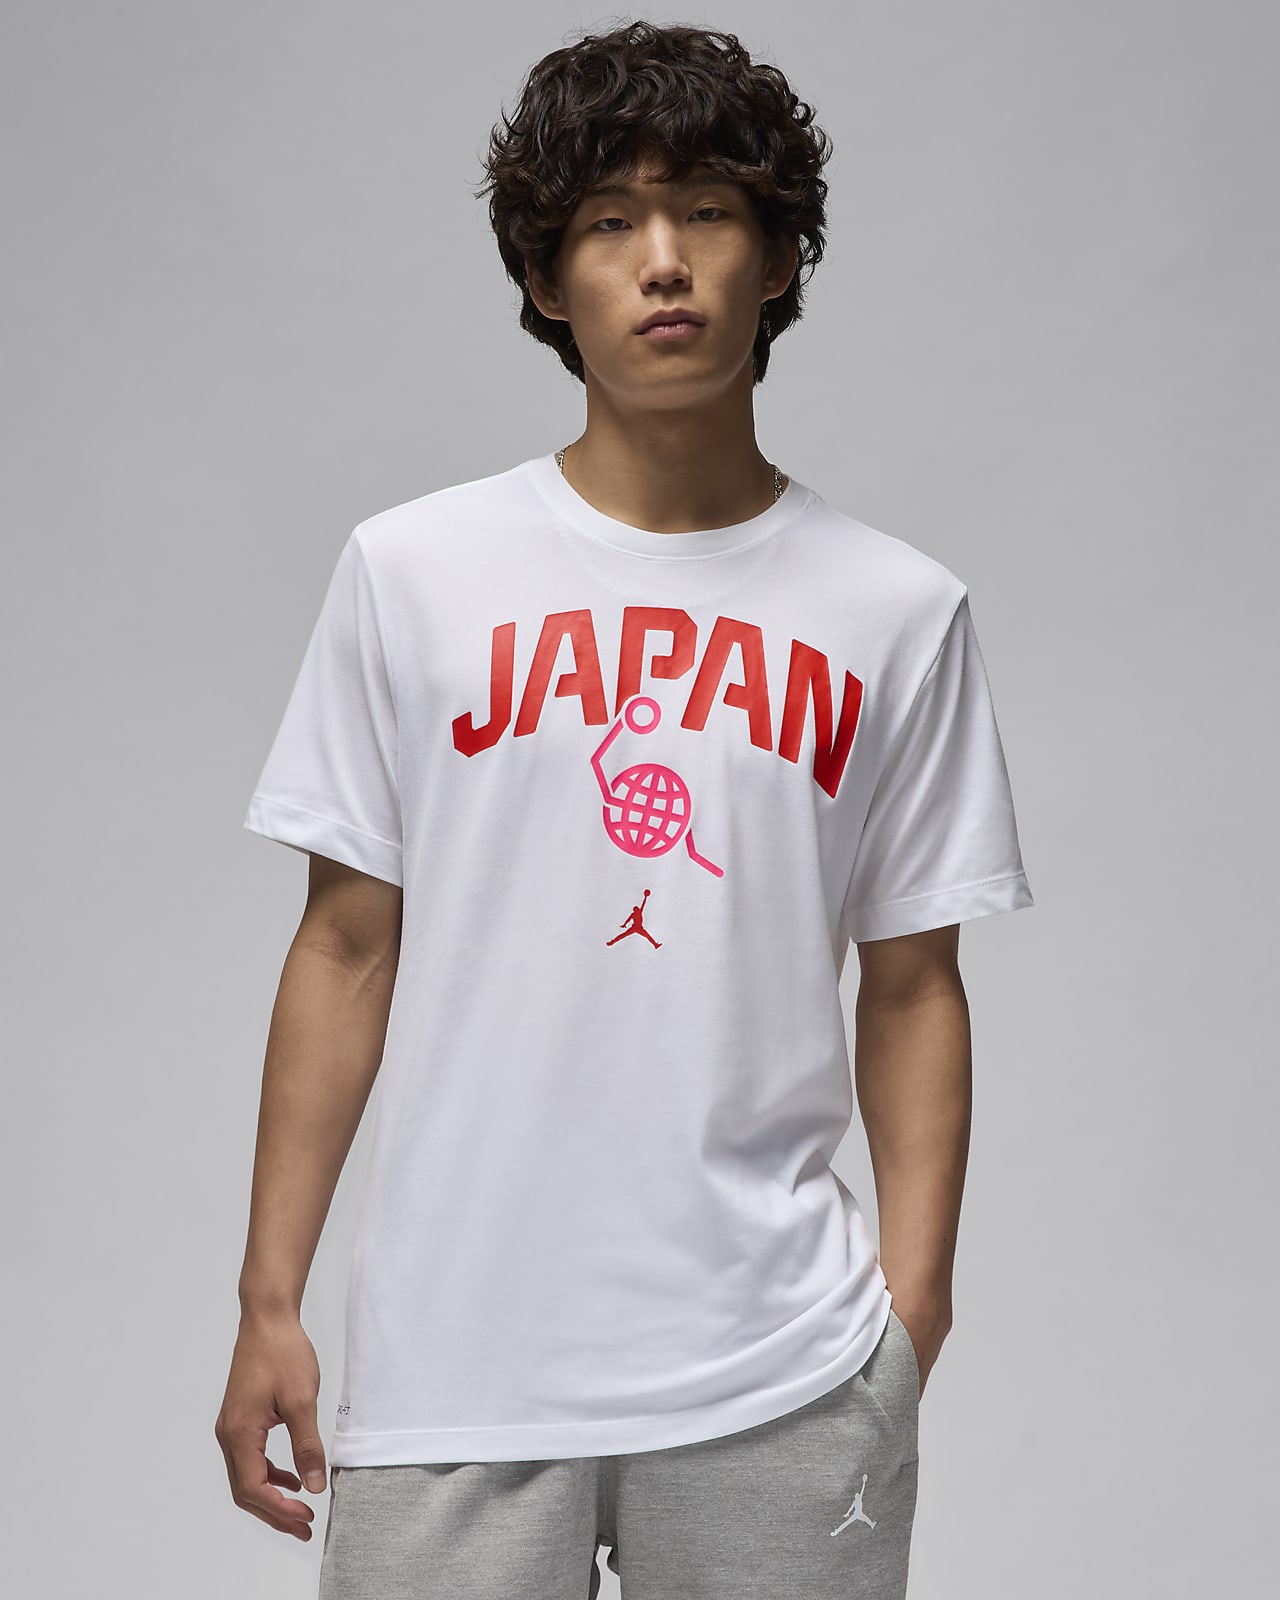 日本 メンズ ジョーダン バスケットボール Tシャツ